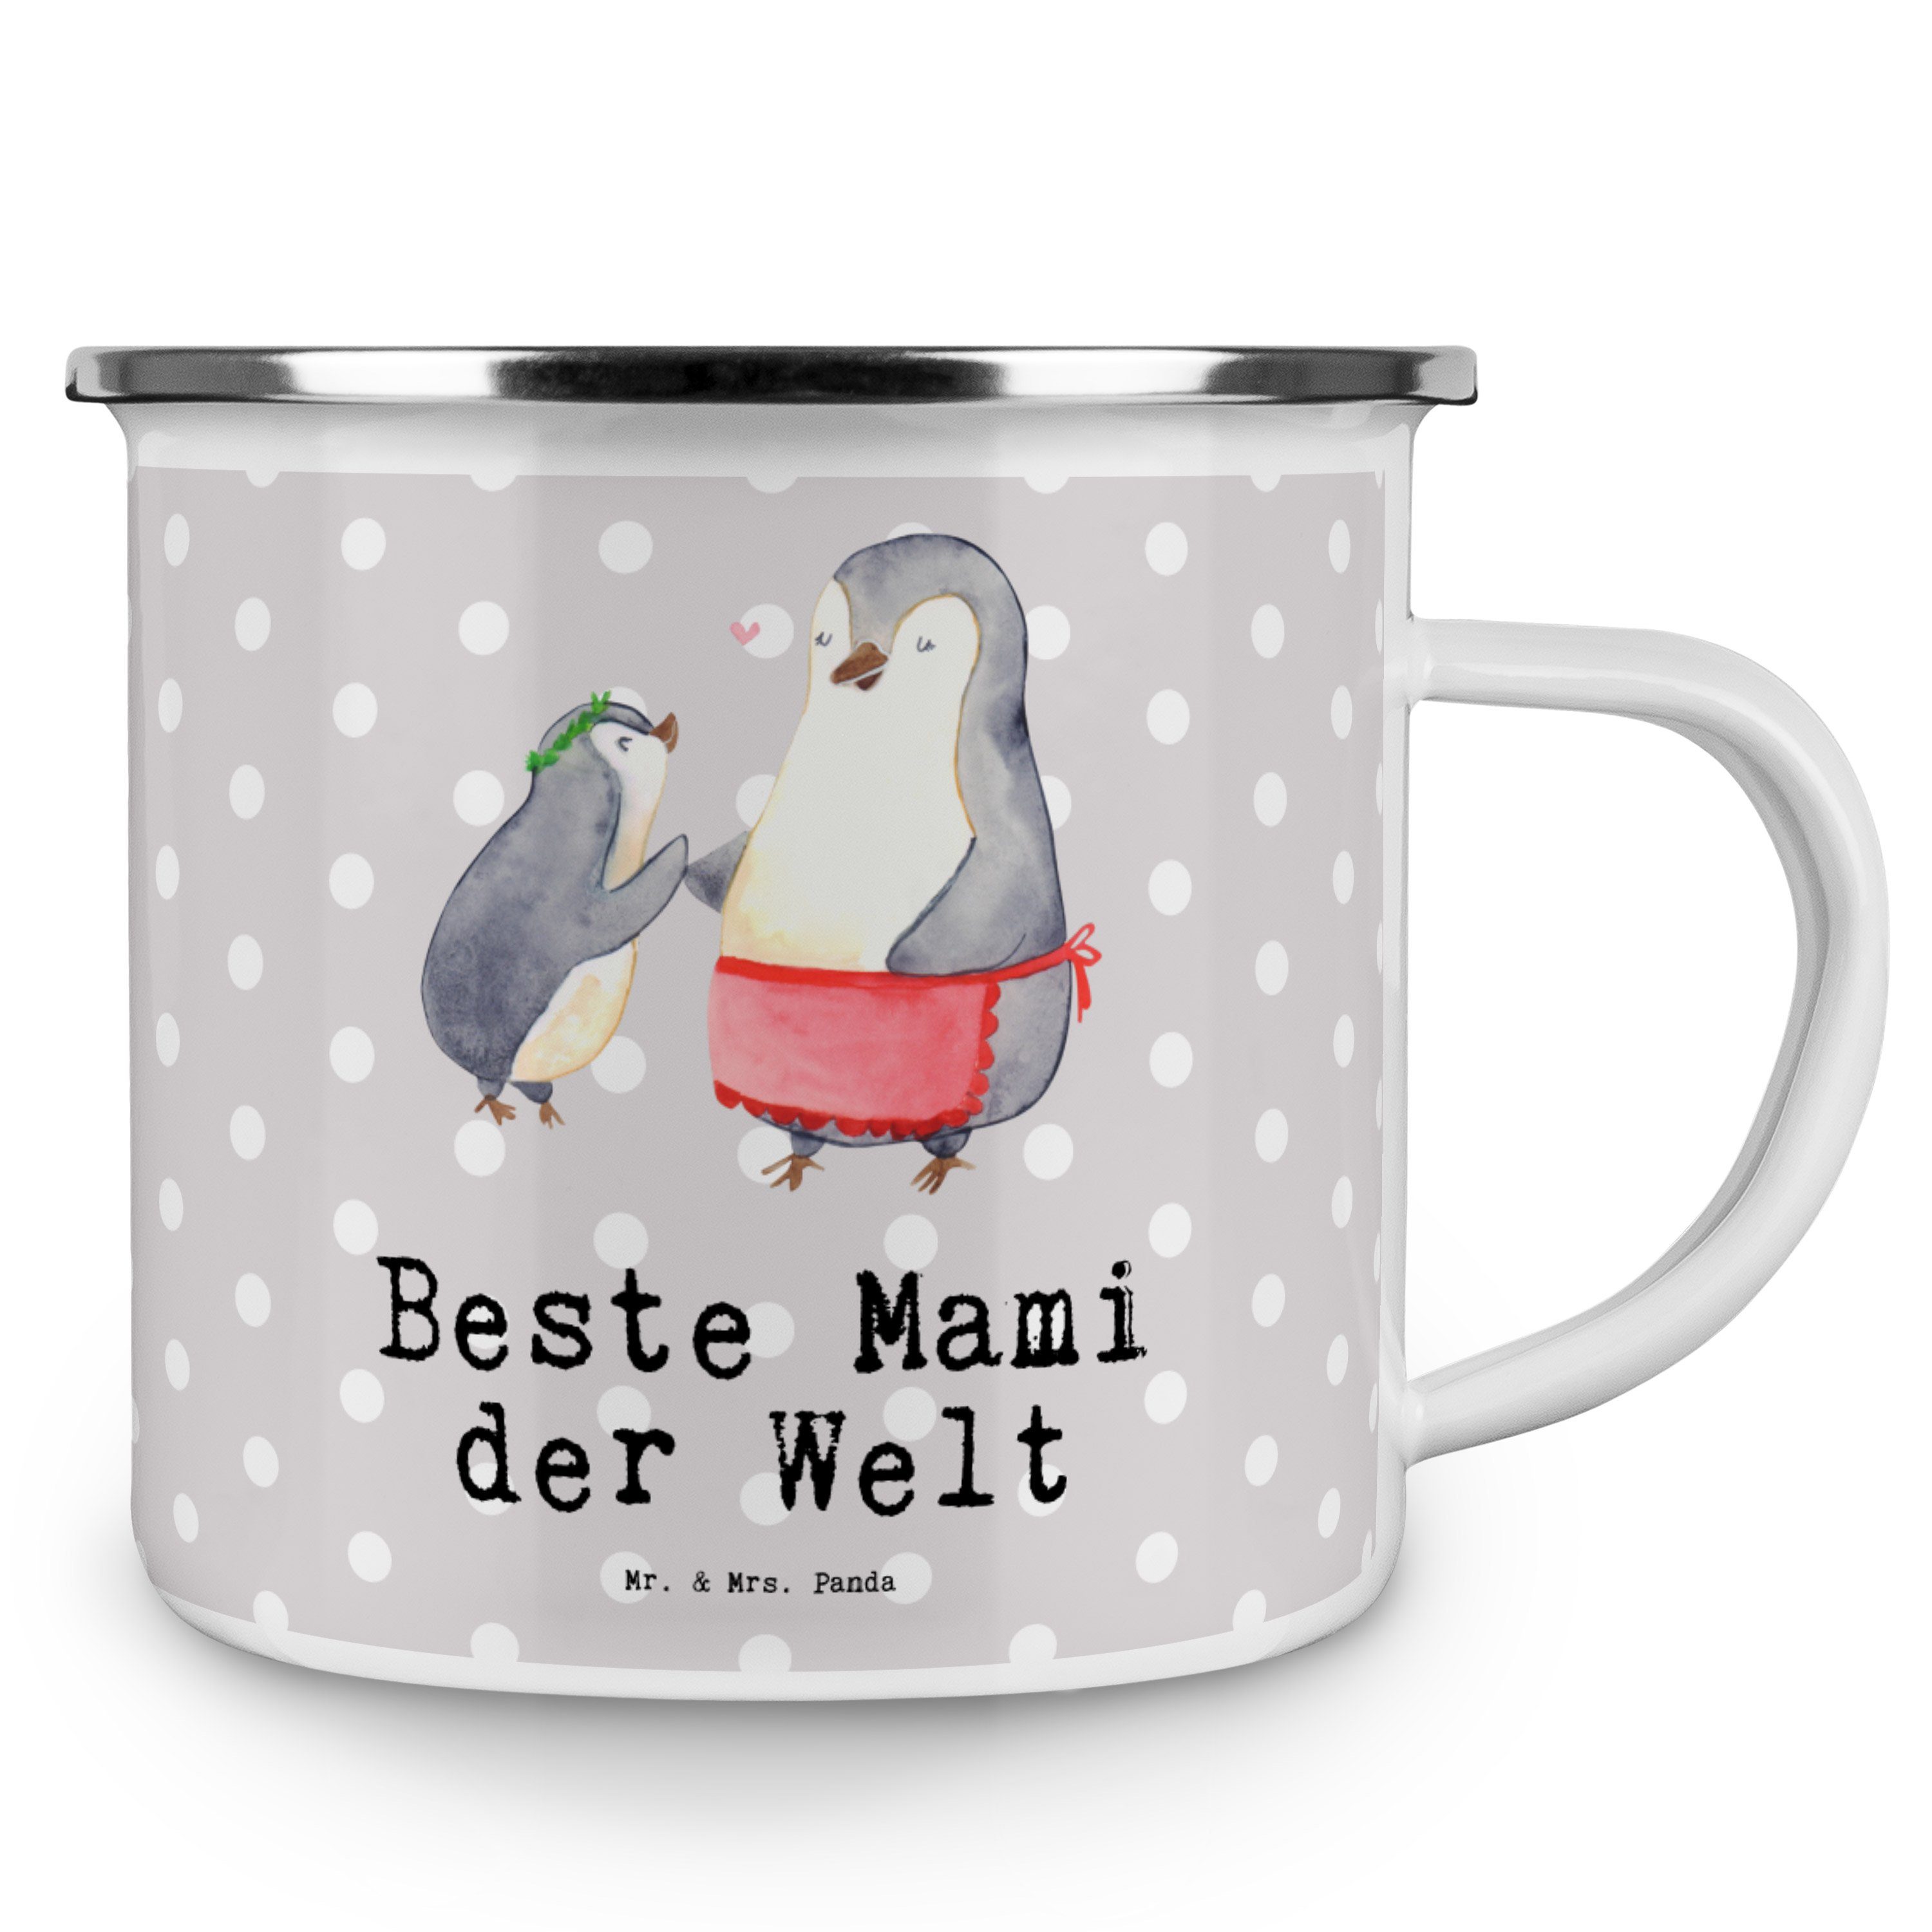 Welt Mrs. Mr. & Pinguin - Mami Emaille der Beste Becher Geschenk, Pastell Grau Panda - Geburtstagsges,